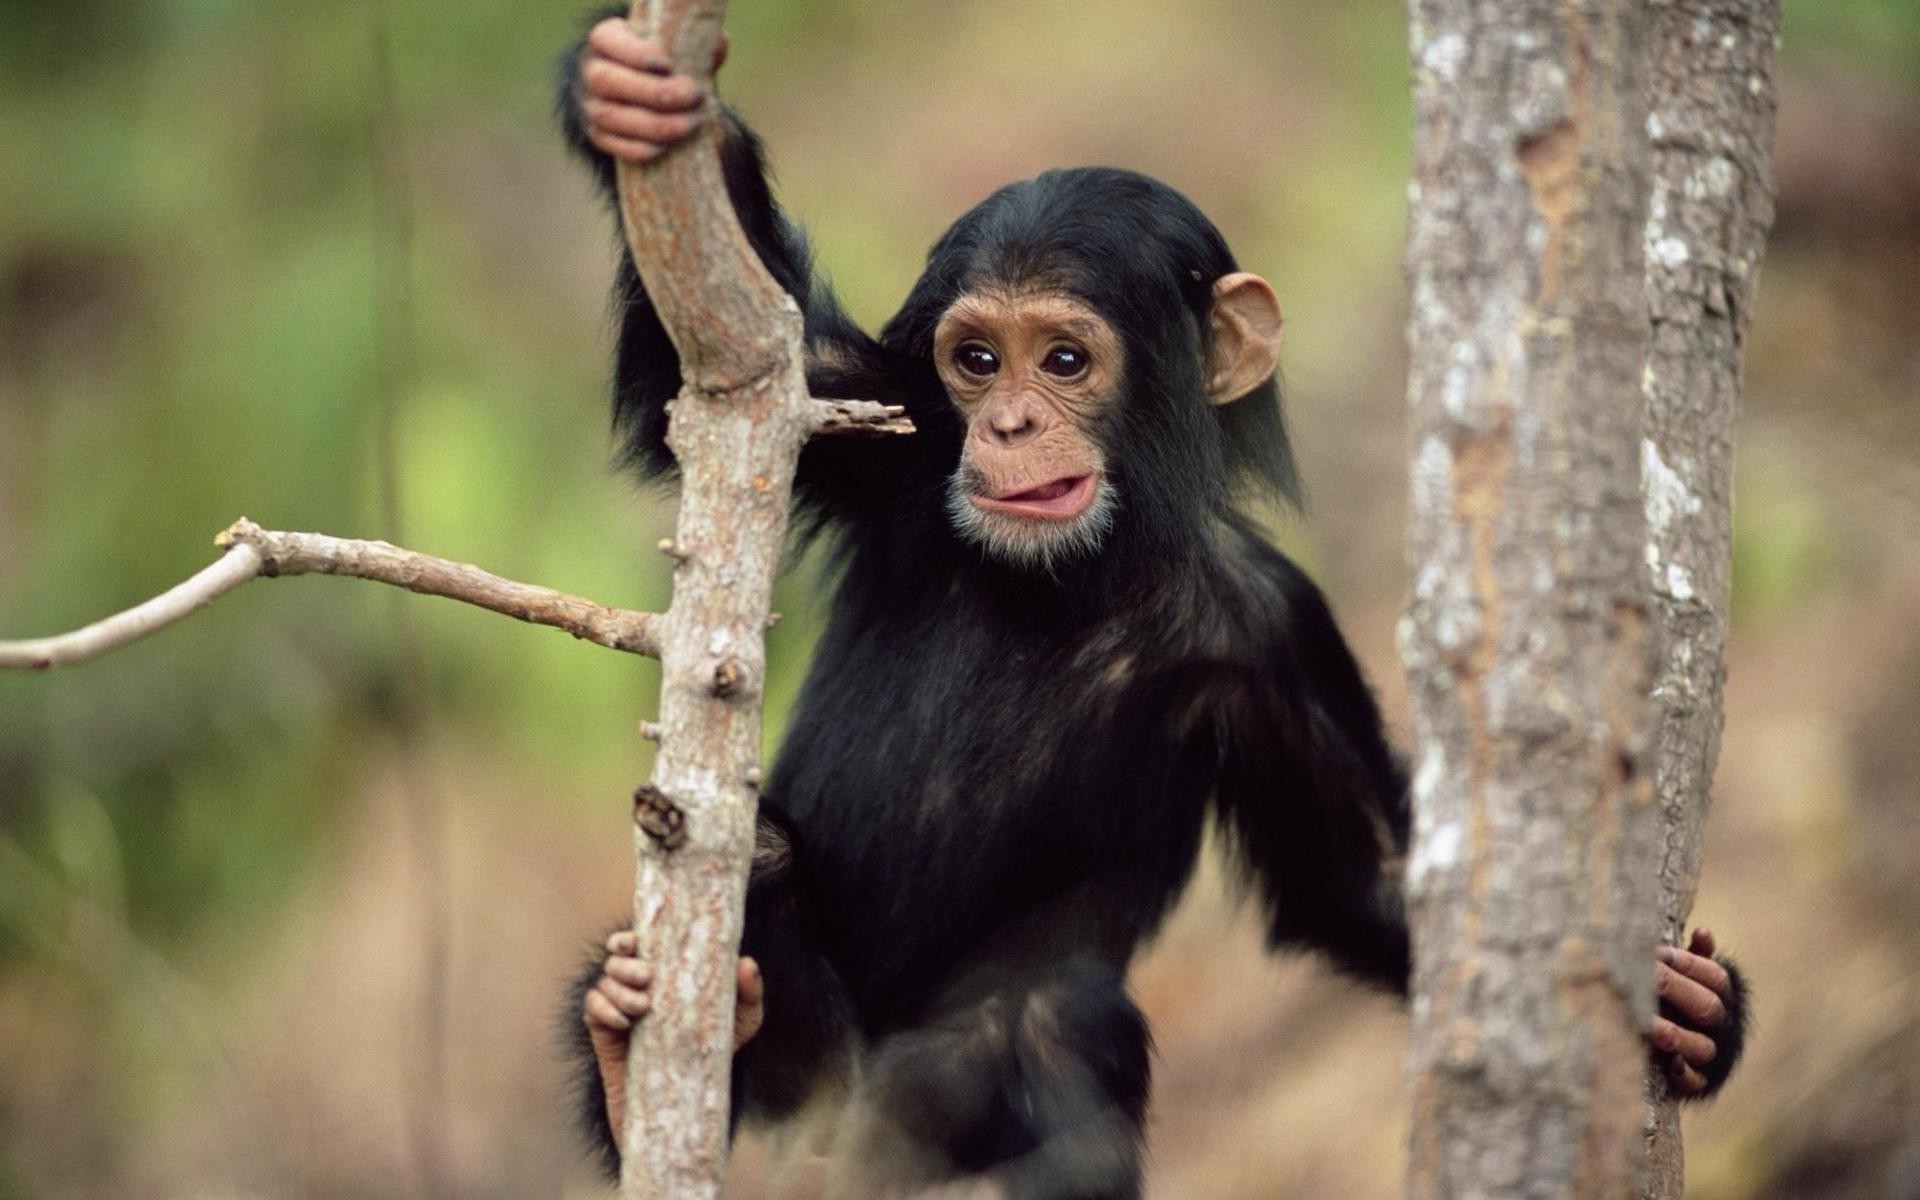 приматы млекопитающее дикой природы природа предстоятель древесины обезьяна джунгли дикий дерево на открытом воздухе портрет милые кривляться животное мех